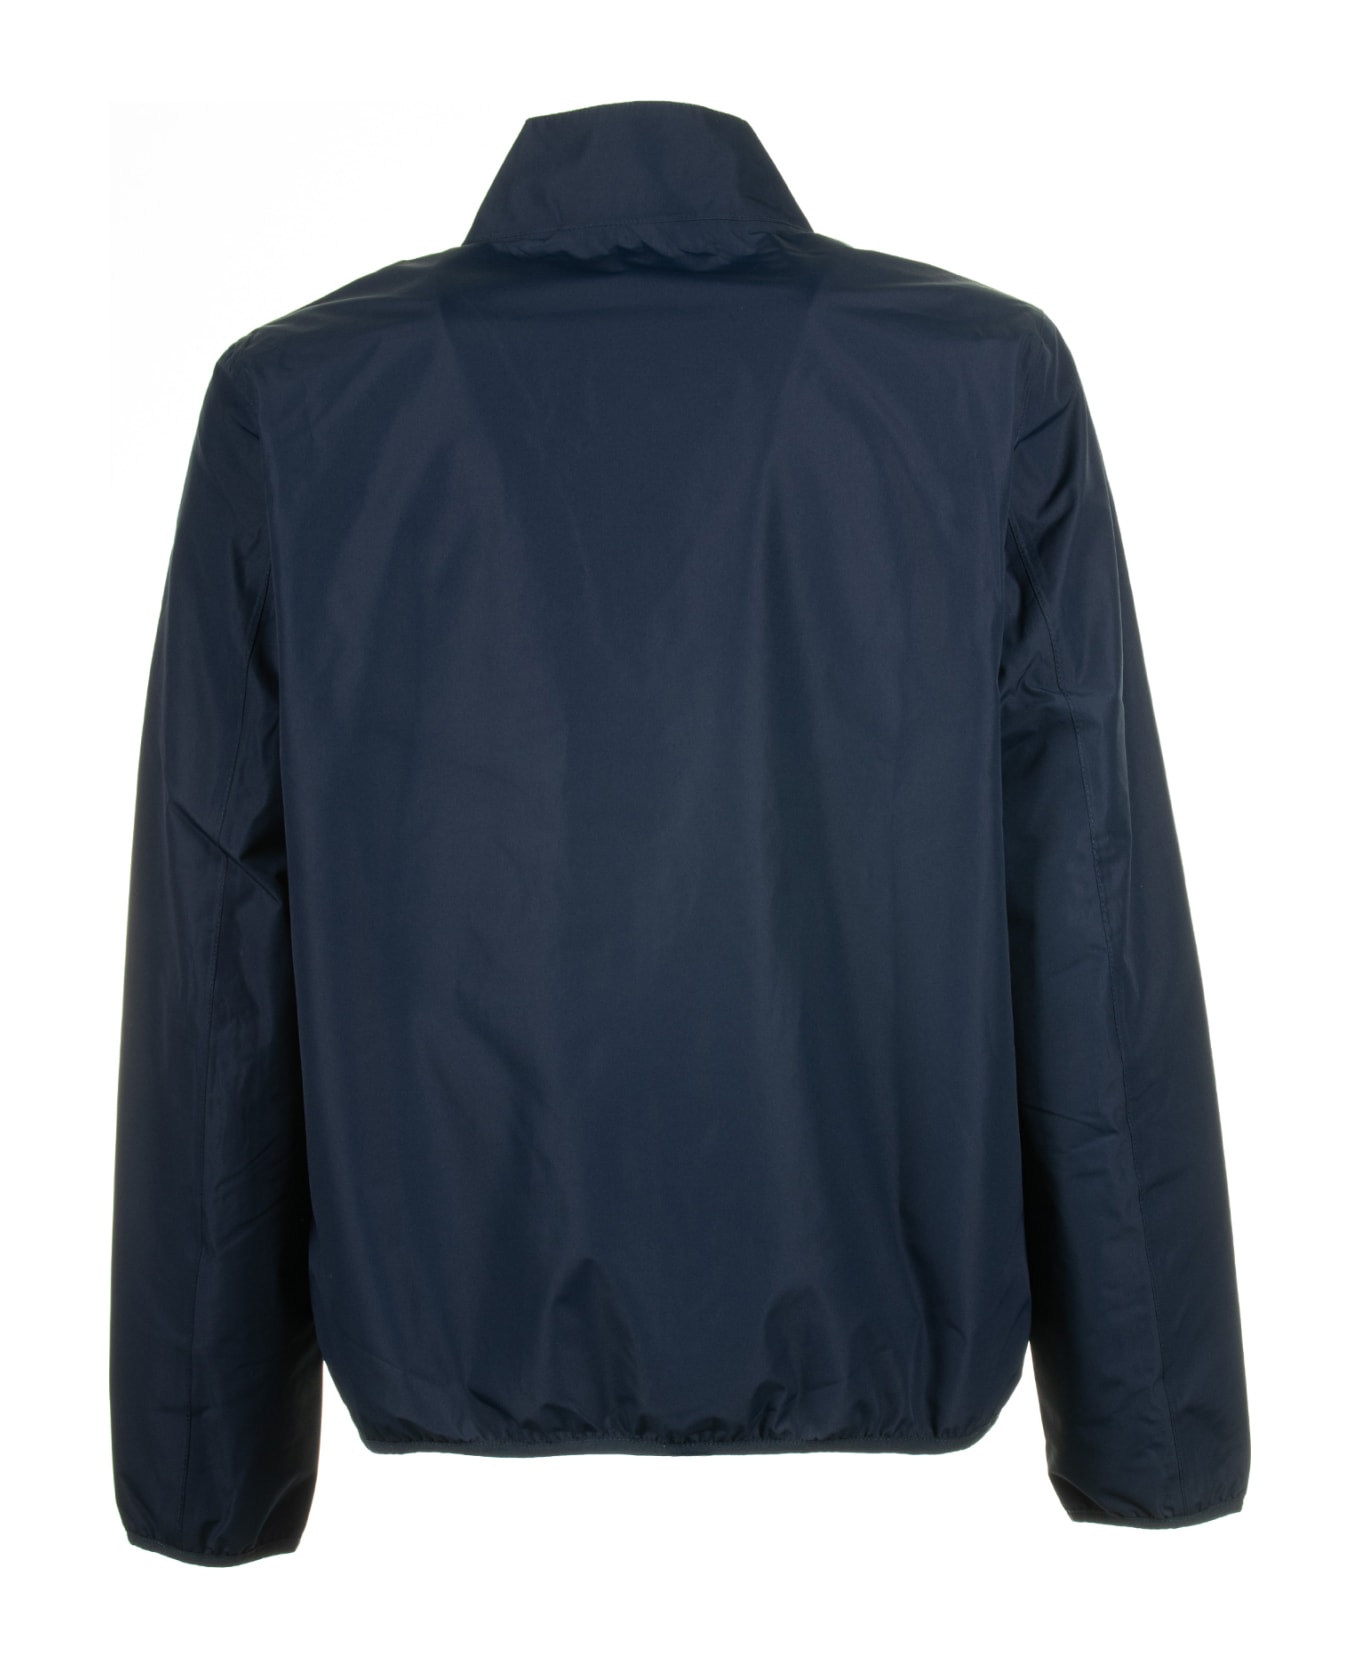 Barbour Navy Blue Jacket With Zip - NAVY